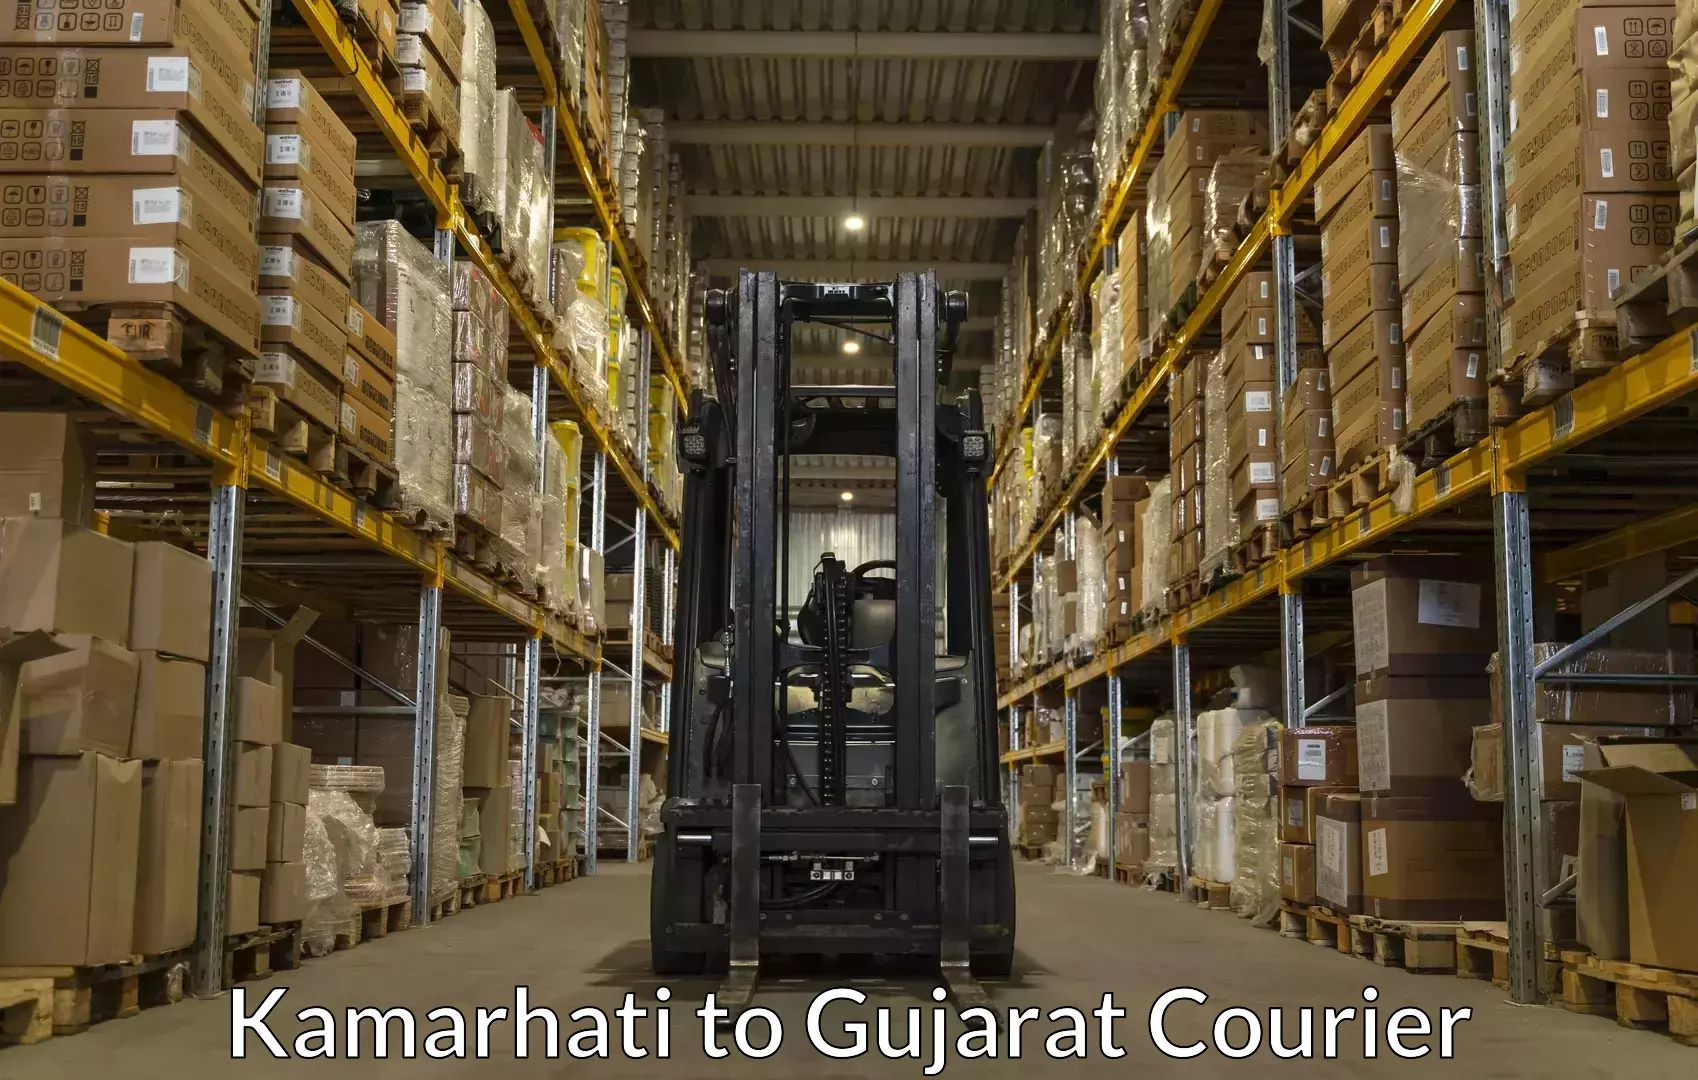 Luggage shipping service Kamarhati to Gujarat